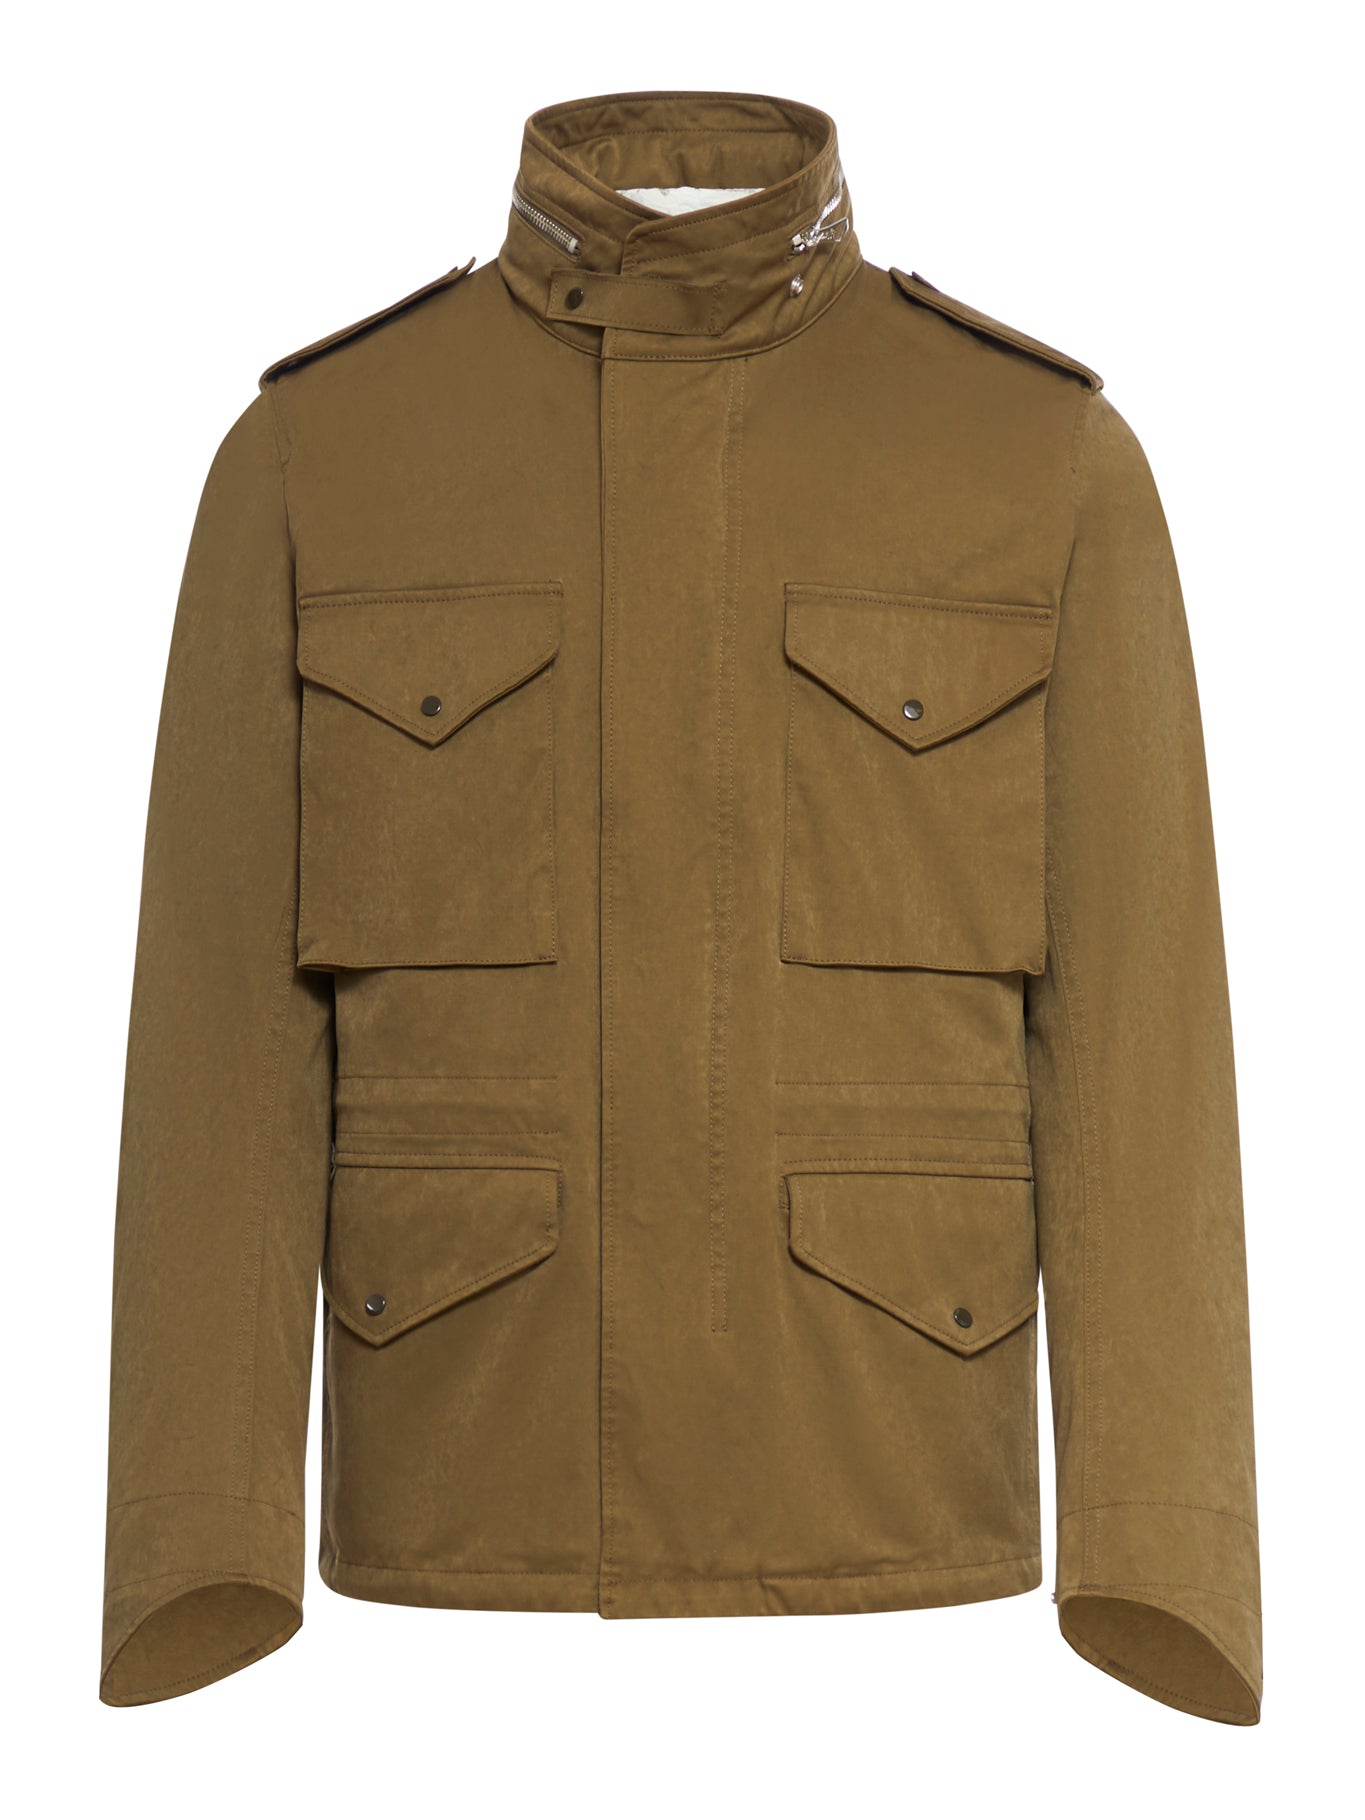 giacca militare con tasche multiple con patta